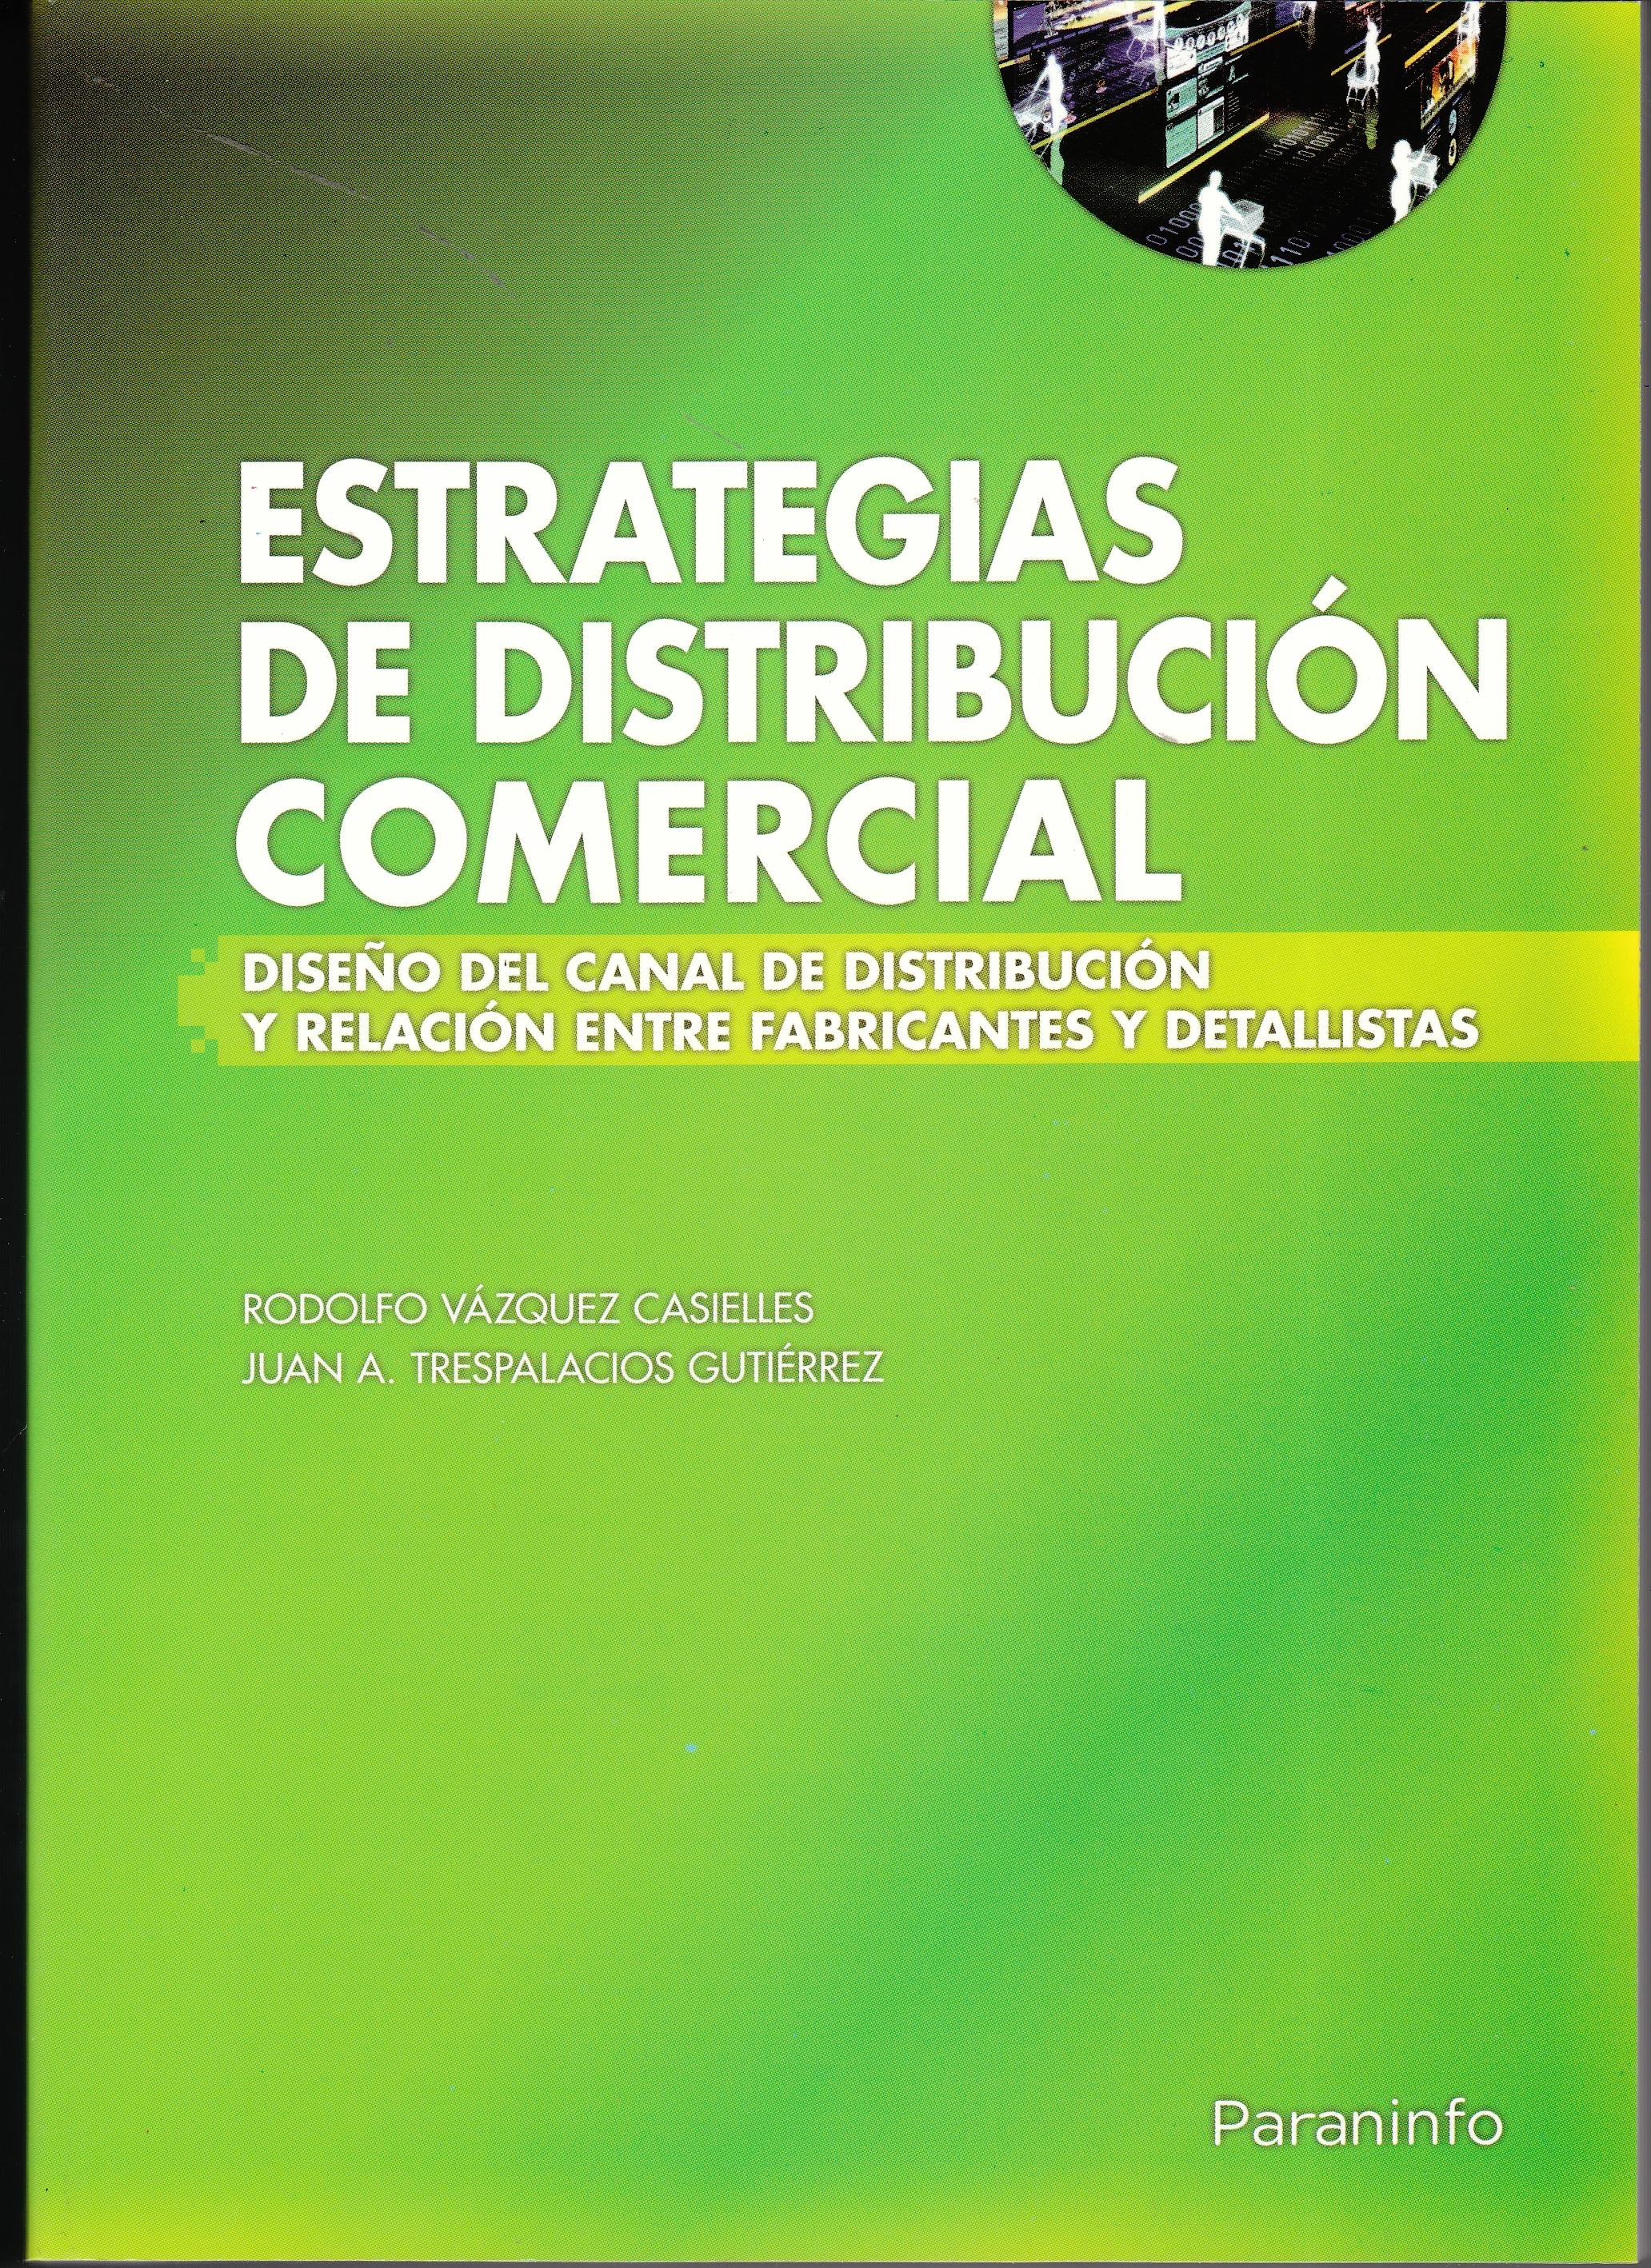 Estrategias de Distribución Comercial "Diseño del Canal de Distribución y Relación Entre Fabricantes...". Diseño del Canal de Distribución y Relación Entre Fabricantes...